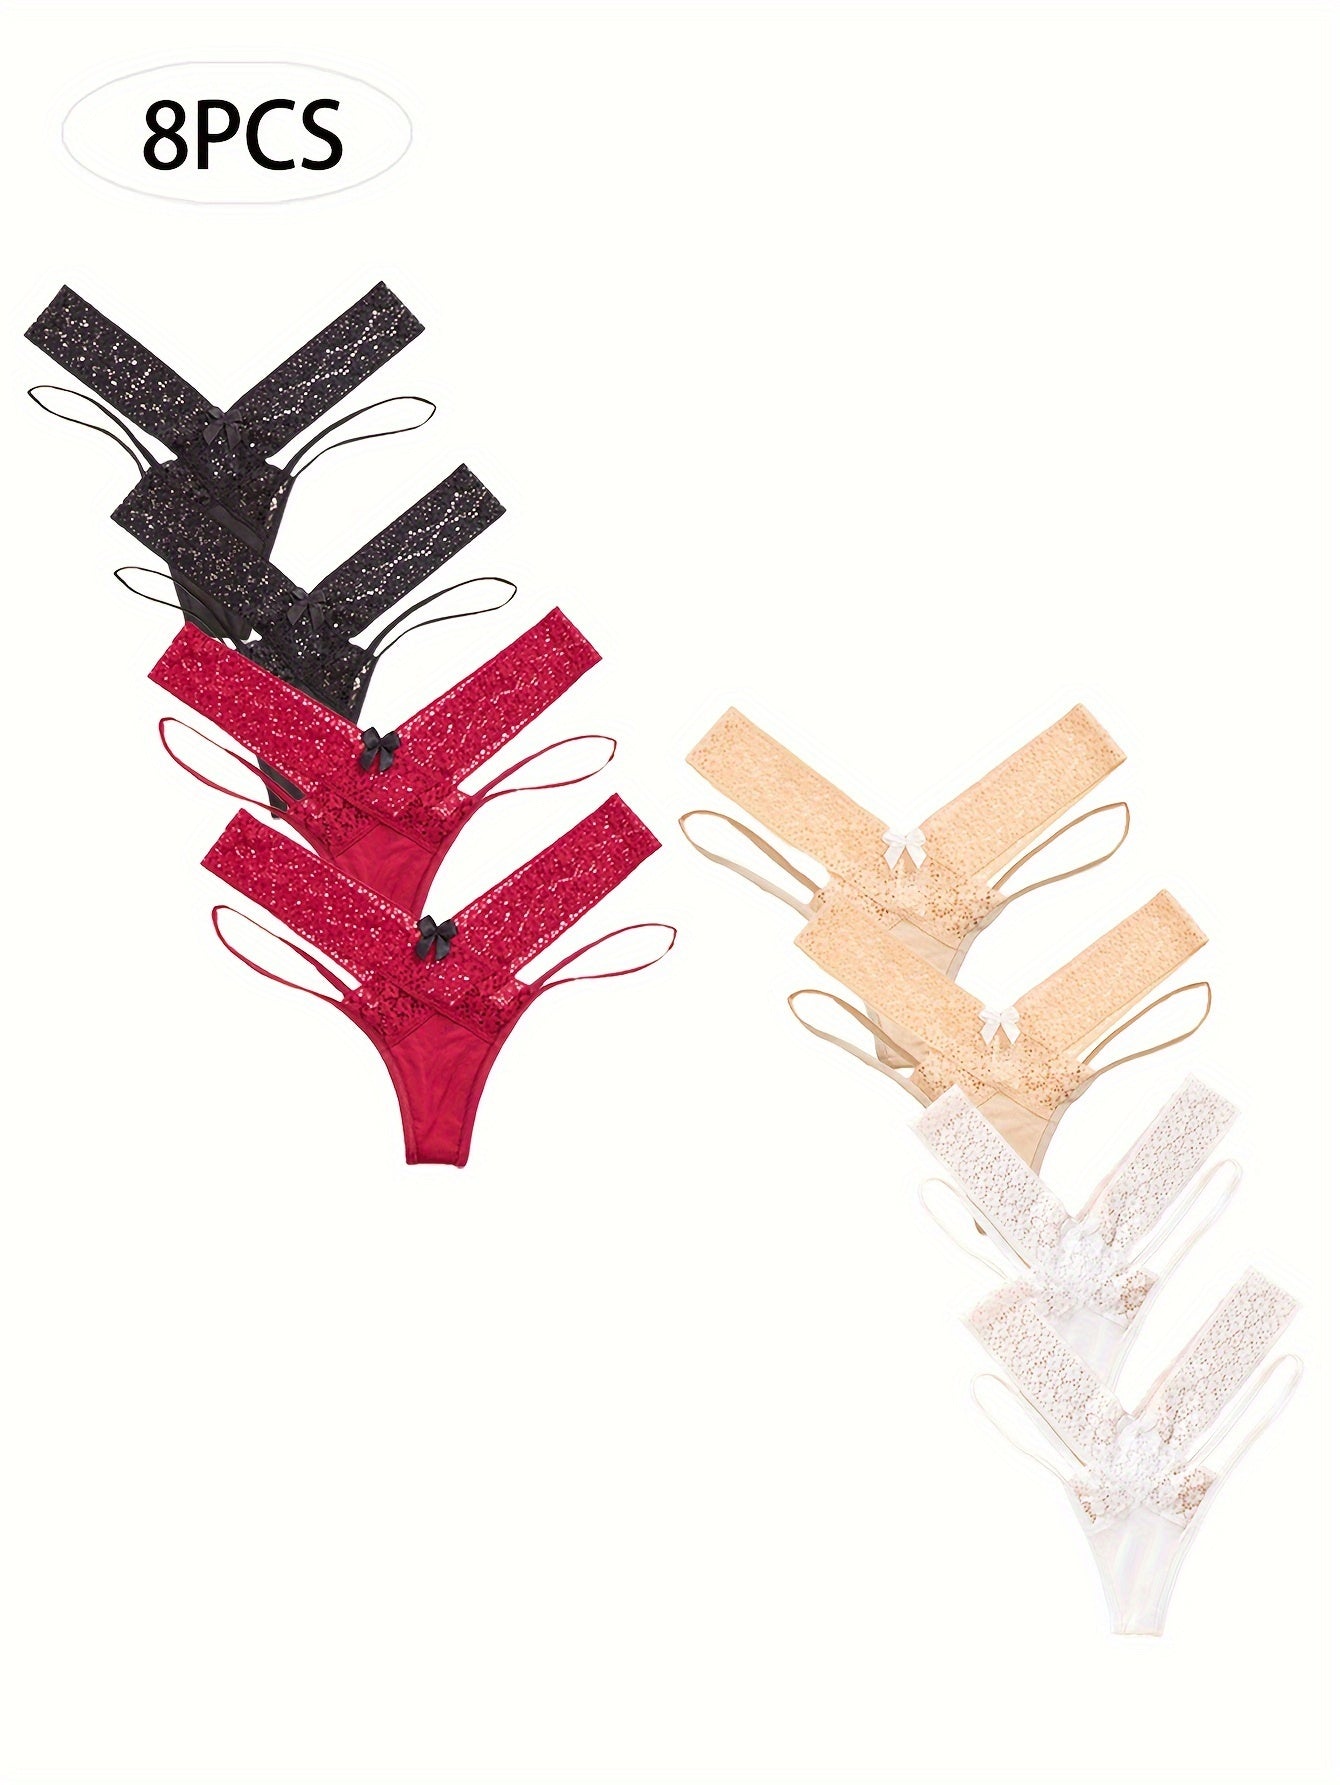 8PCS Women's Sexy Lace Thong Women's Lingerie Cross Suspender Thong Cutout Solid Color Lingerie - Irene's Secret